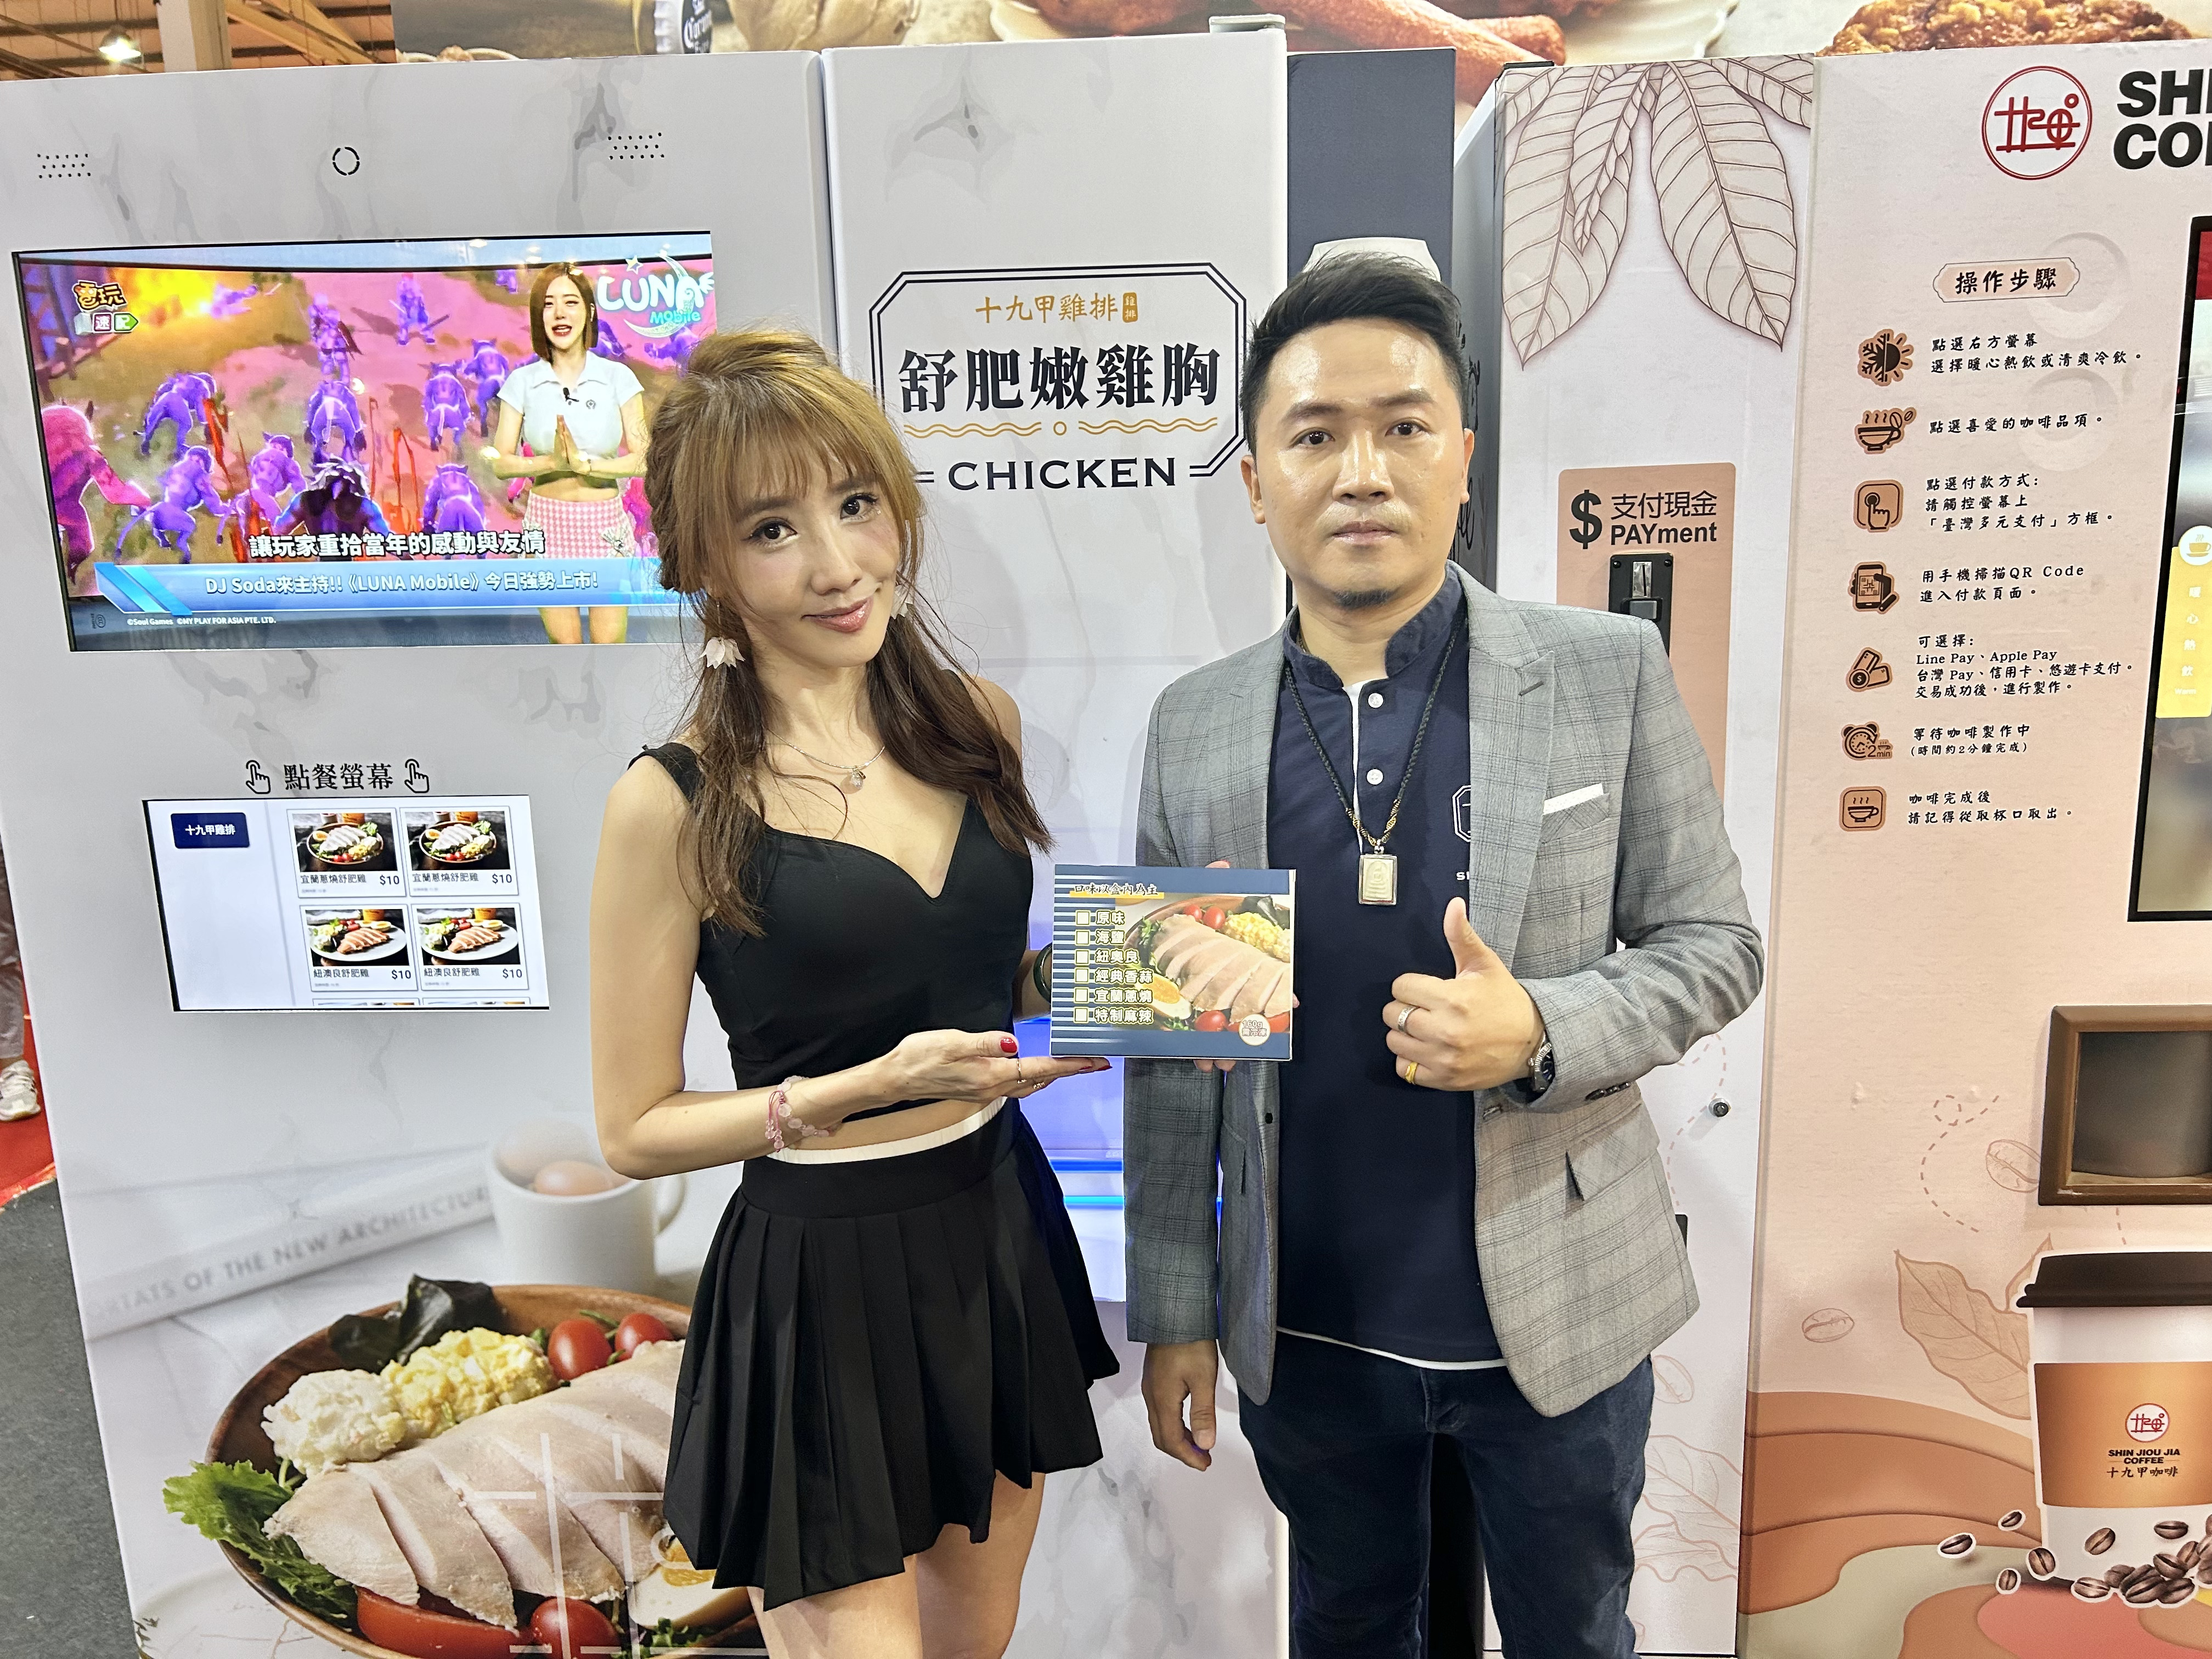 尚溢国际餐饮总经理黄田富(右)展示十九甲鸡排首创「舒肥鸡」即时加热智贩机。记者宋健生/摄影